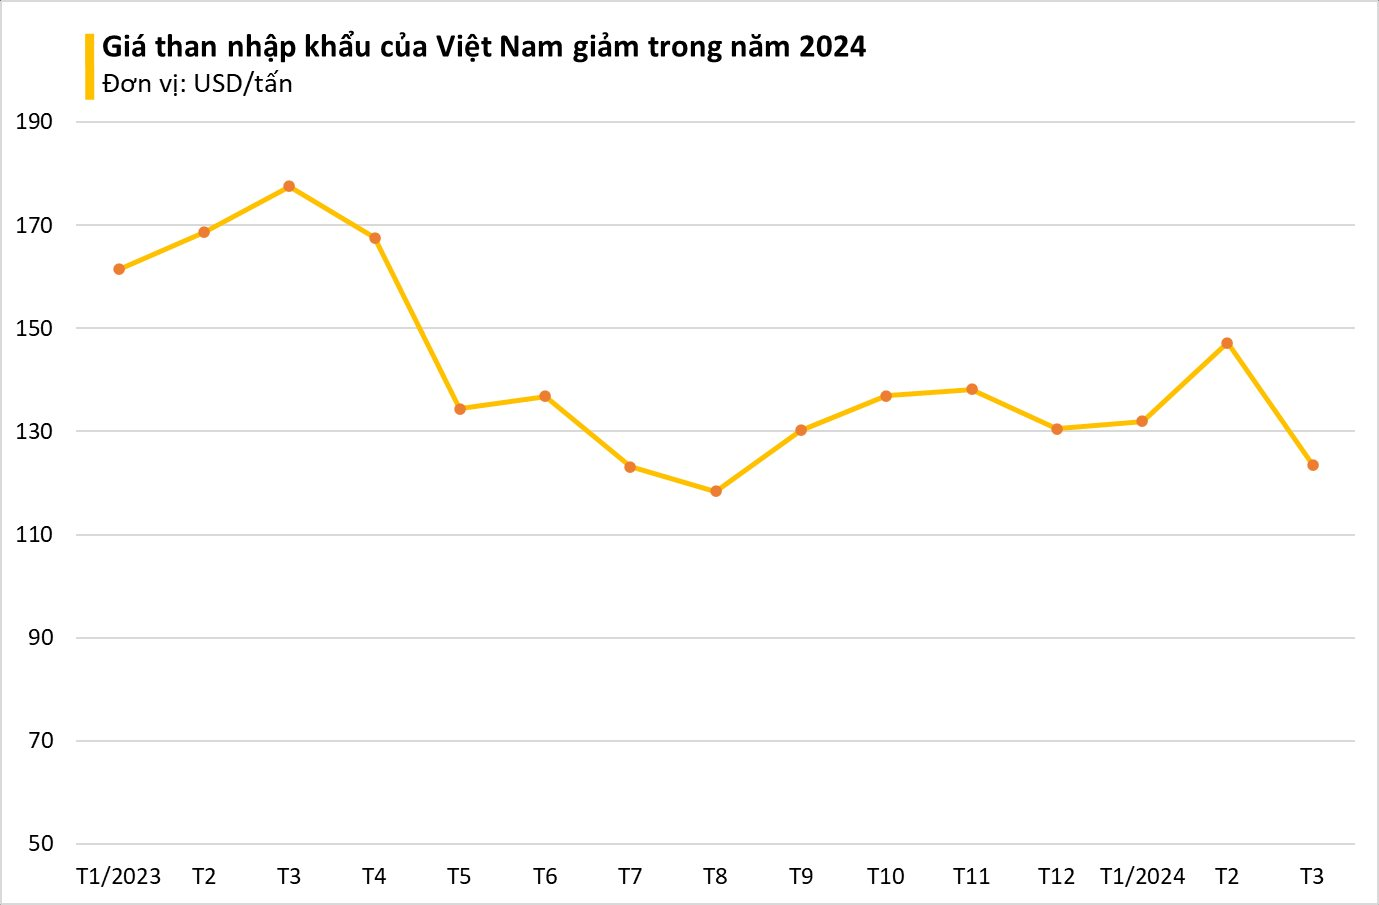 Giá rẻ hấp dẫn, Nga ưu ái xuất sang Việt Nam một nguyên liệu cực quan trọng: Nhập khẩu tăng hơn 140%, 'vàng đen' Nga đủ dùng tận 300 năm- Ảnh 2.